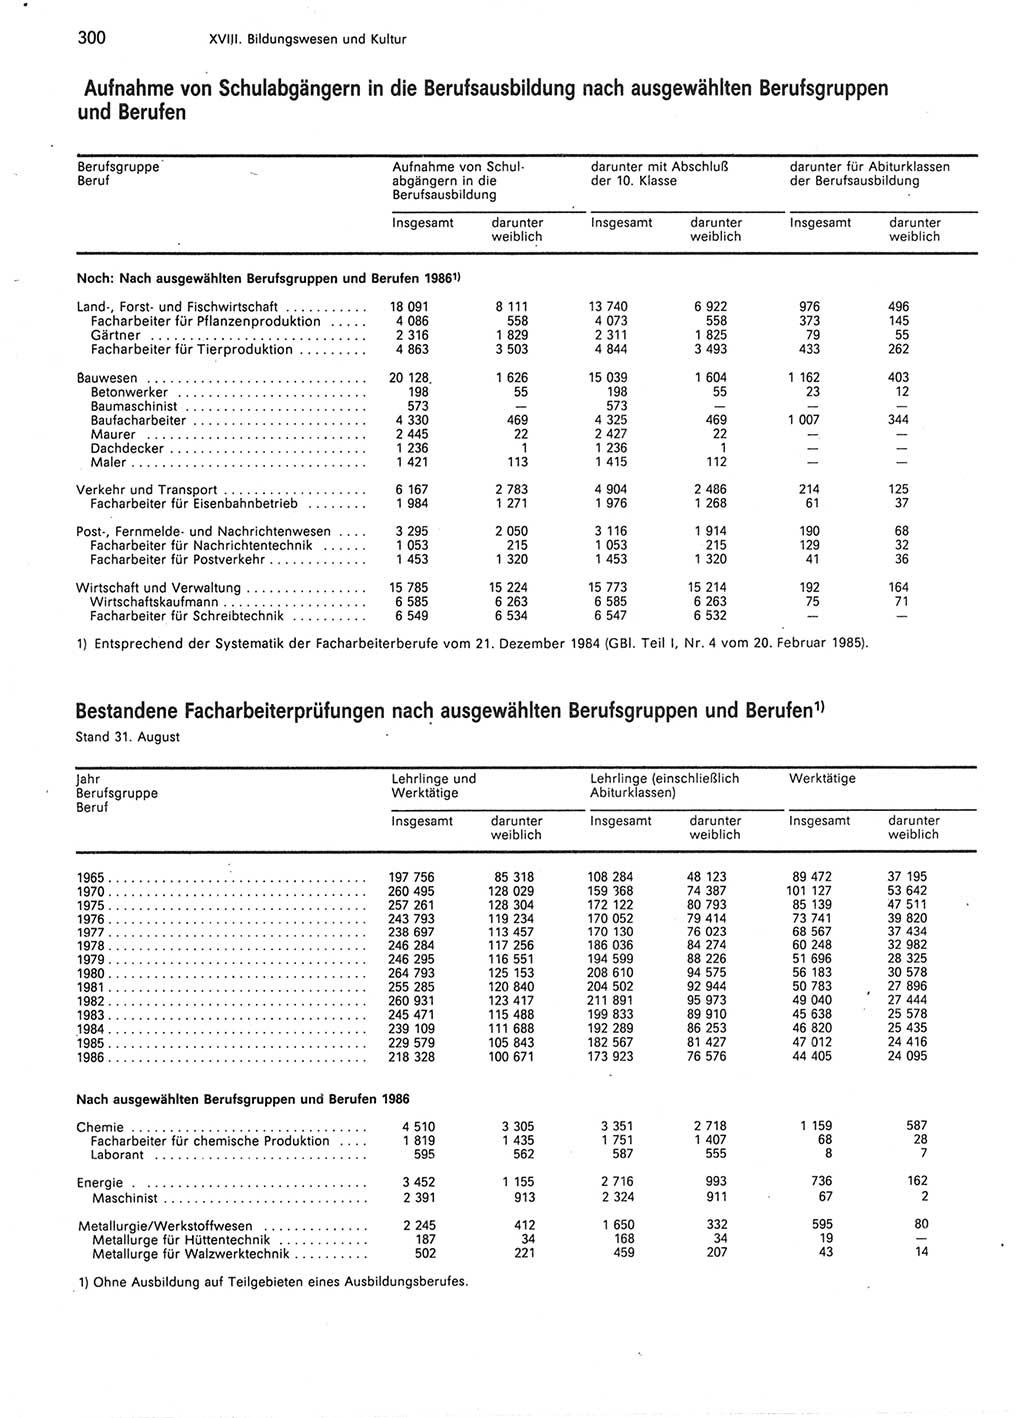 Statistisches Jahrbuch der Deutschen Demokratischen Republik (DDR) 1987, Seite 300 (Stat. Jb. DDR 1987, S. 300)